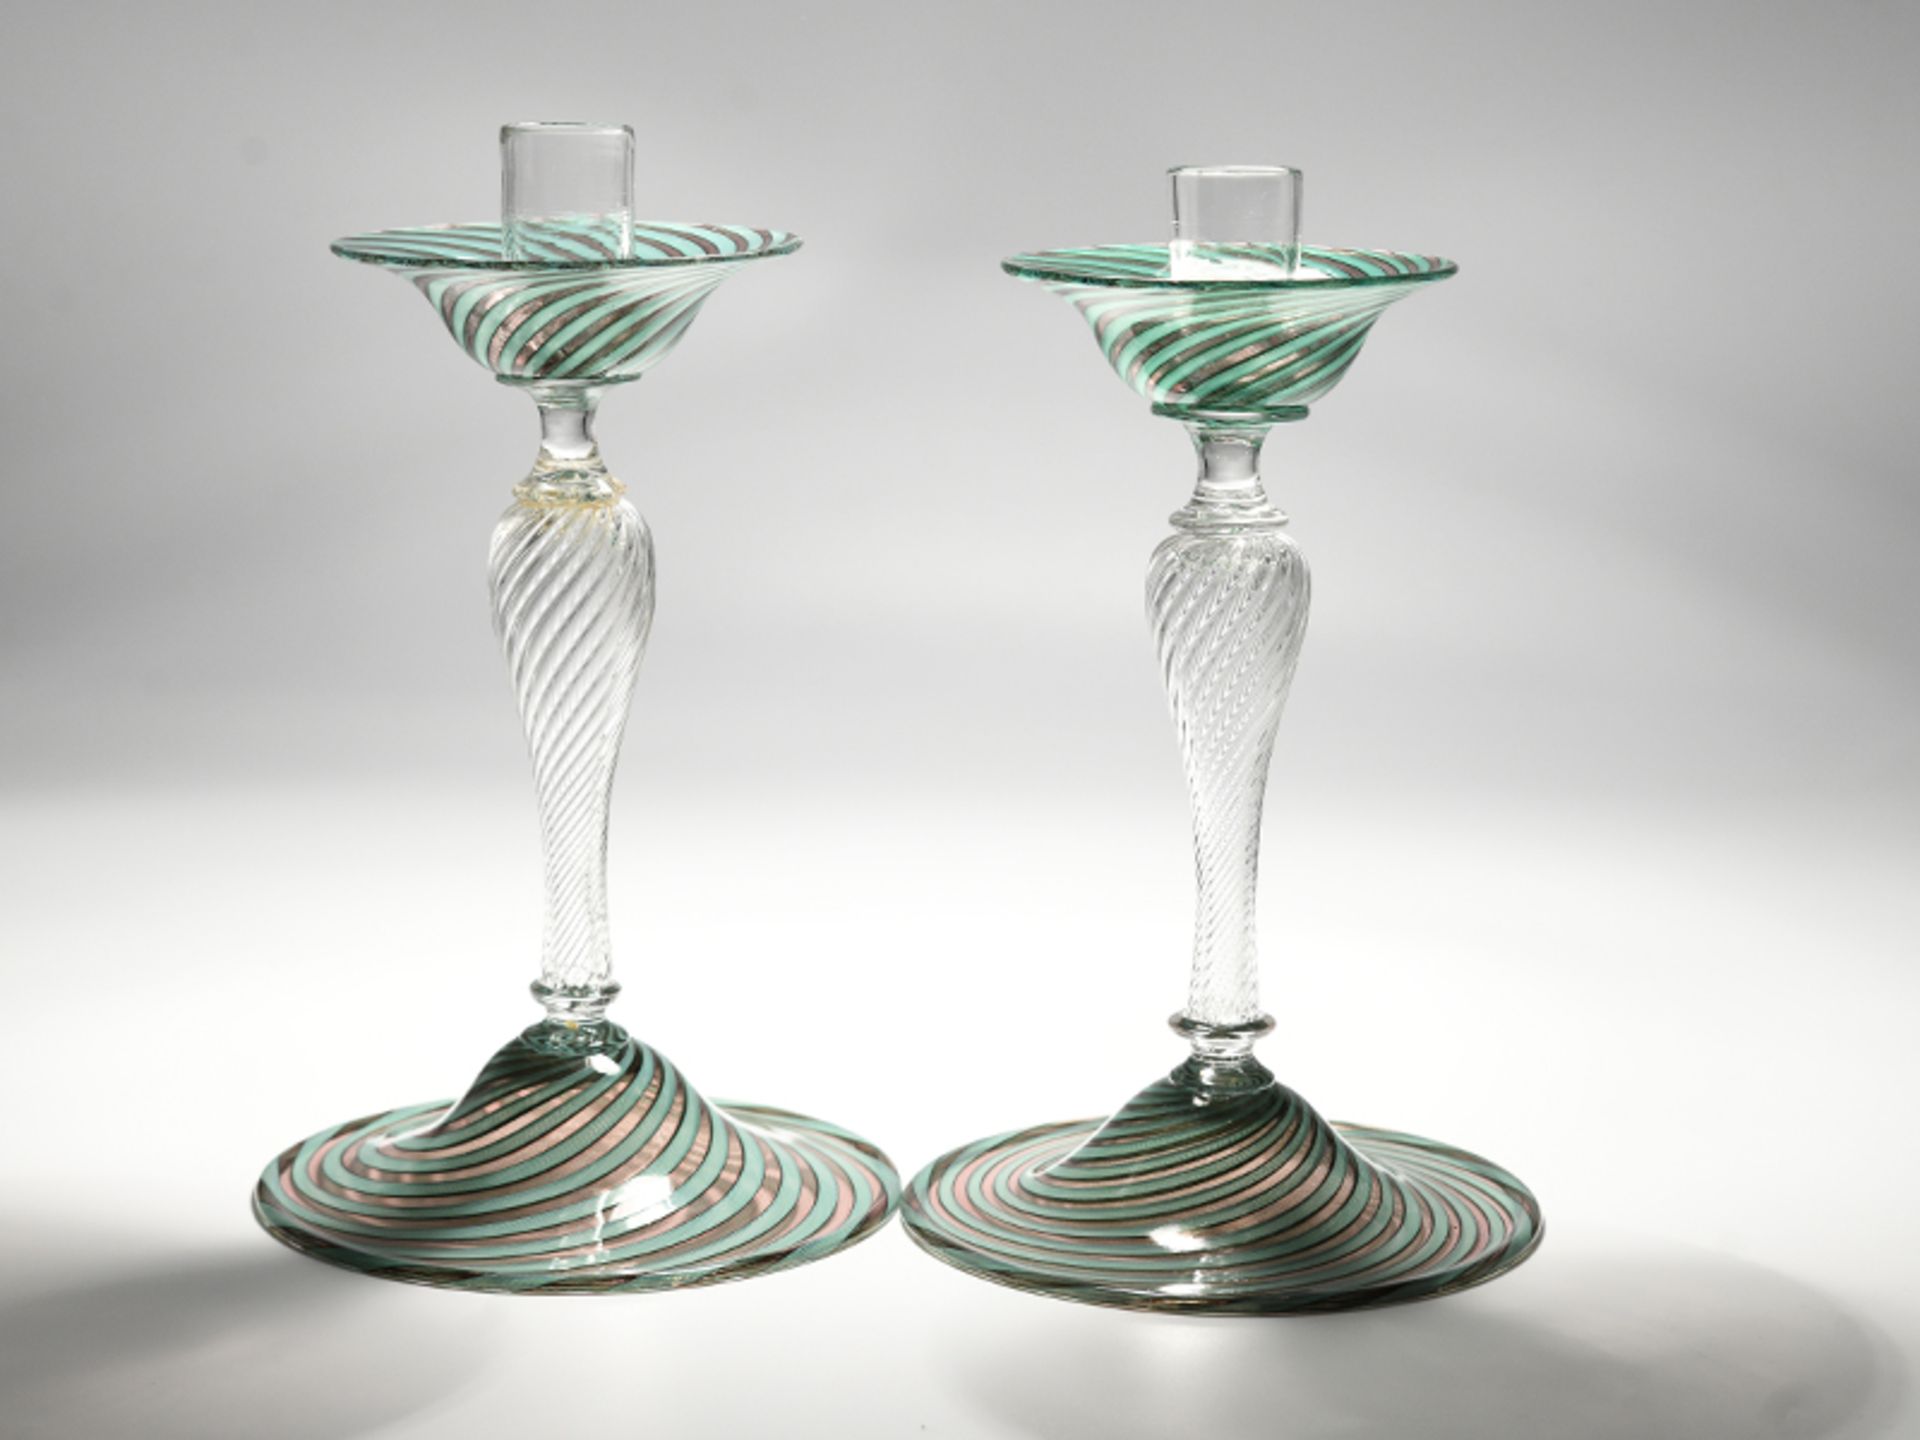 Glas-Leuchter-Paar, Venini, Murano, 20. Jh. brFarbloses Glas, teils mit grÃ¼n-weiÃŸen und